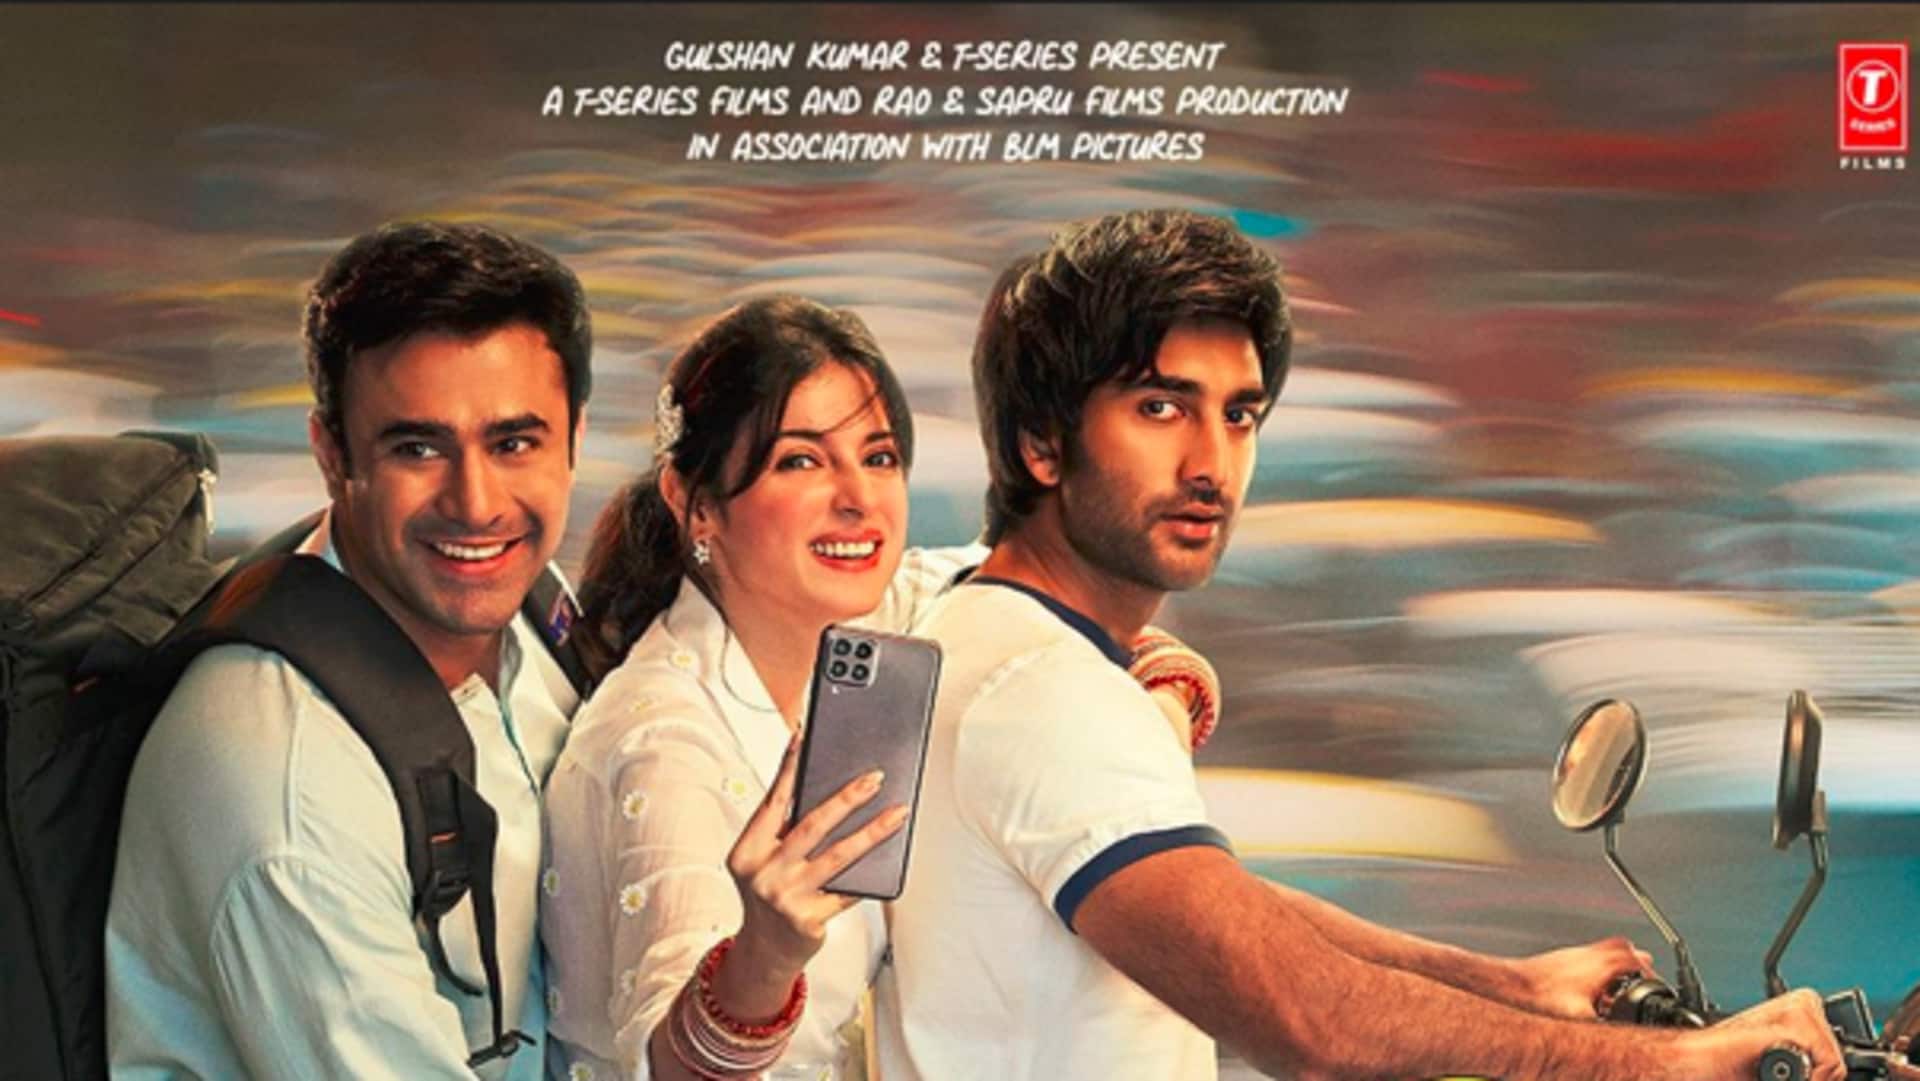 दिव्या खोसला कुमार की 'यारियां 2' की एडवांस बुकिंग शुरू, जानिए कब रिलीज होगी फिल्म